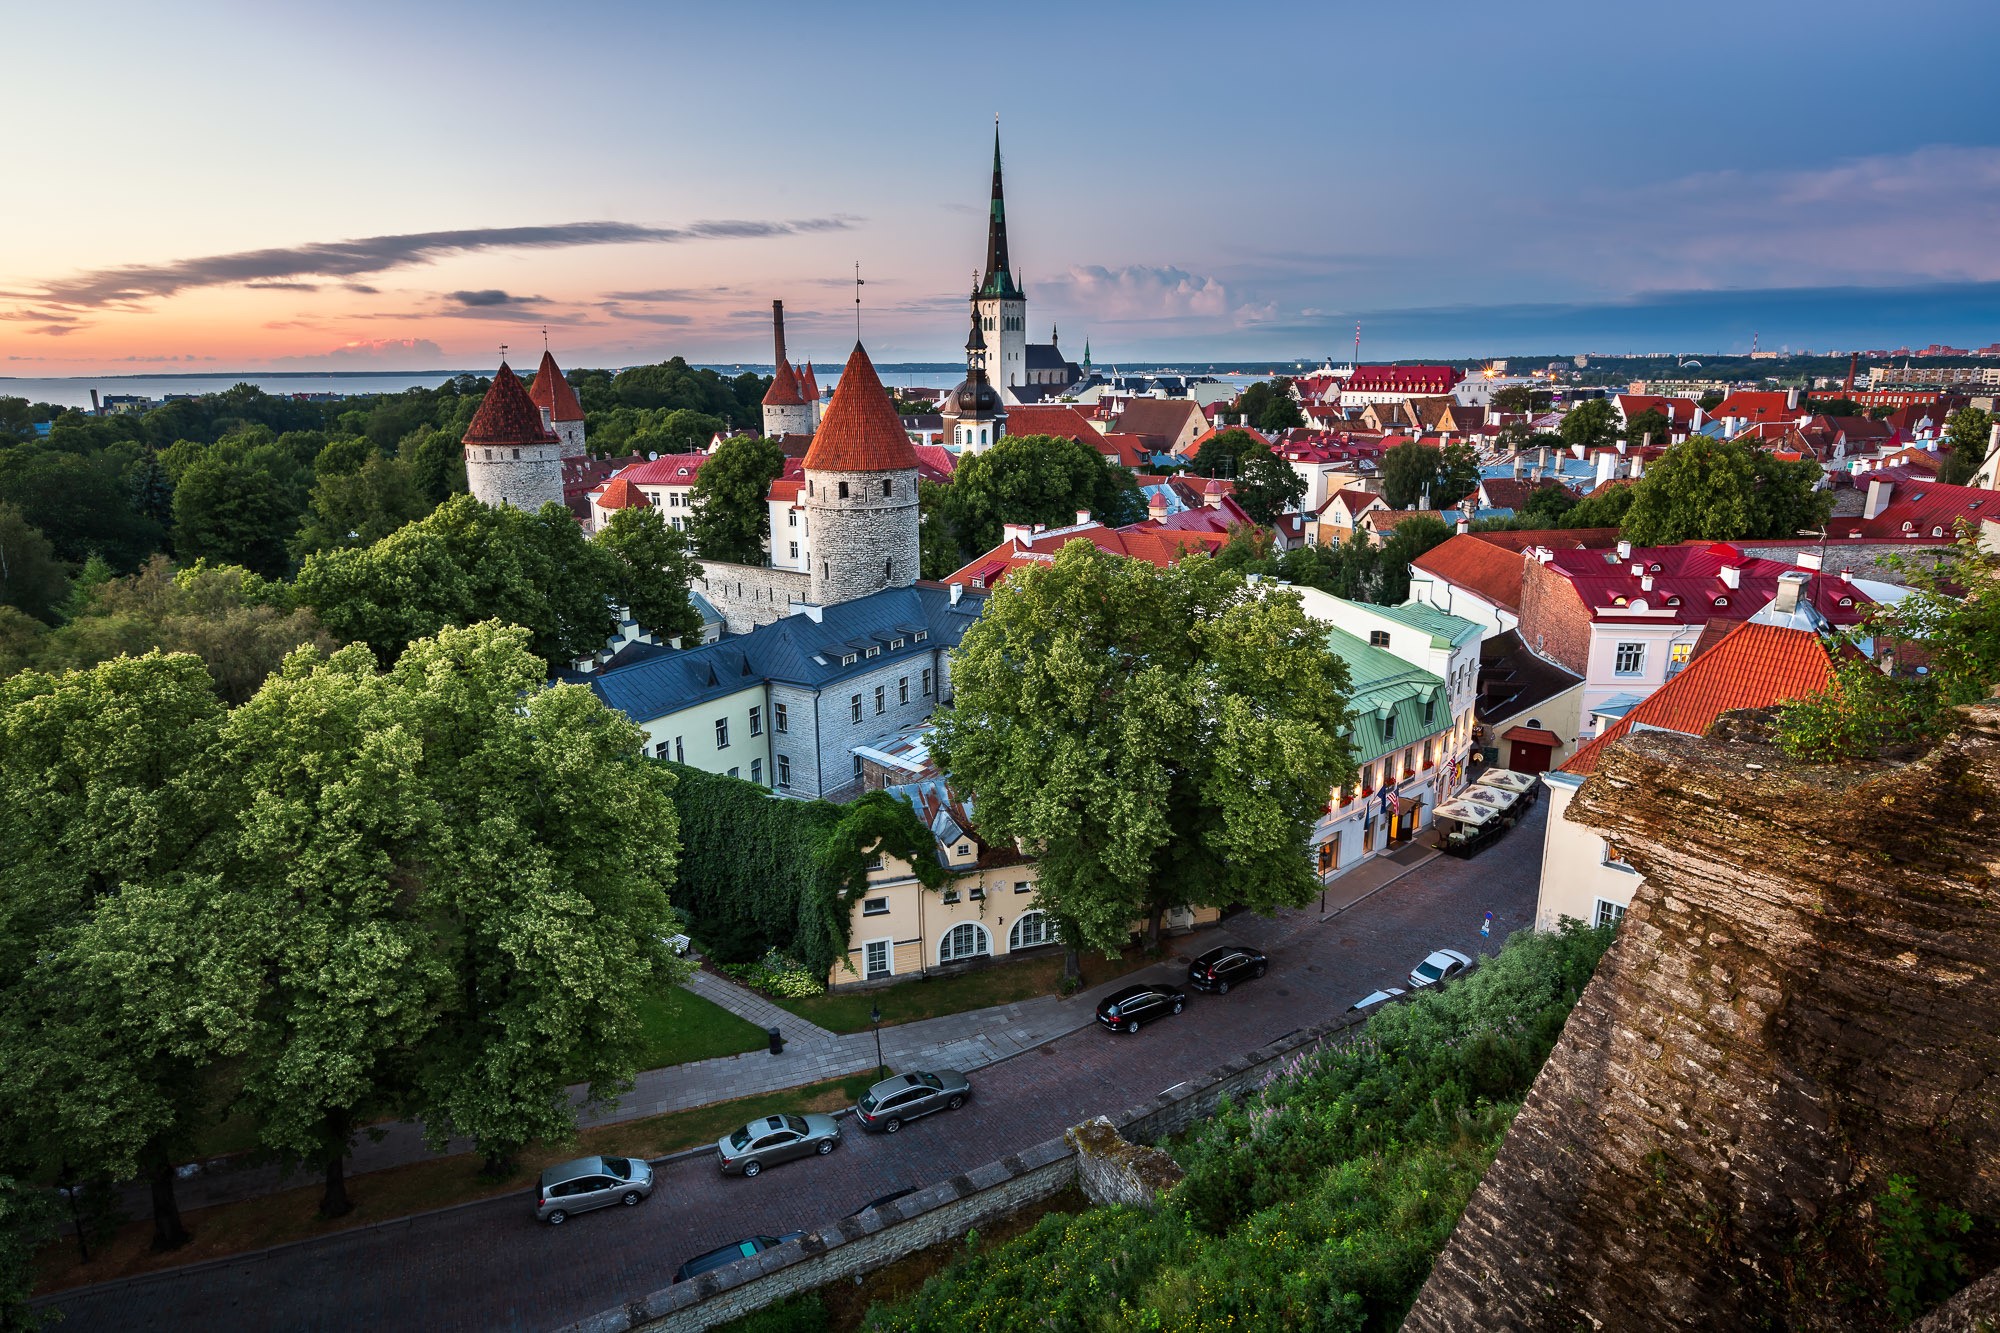 General 2000x1333 Estonia city cityscape trees calm vibrant town dusk idyllic Tallinn